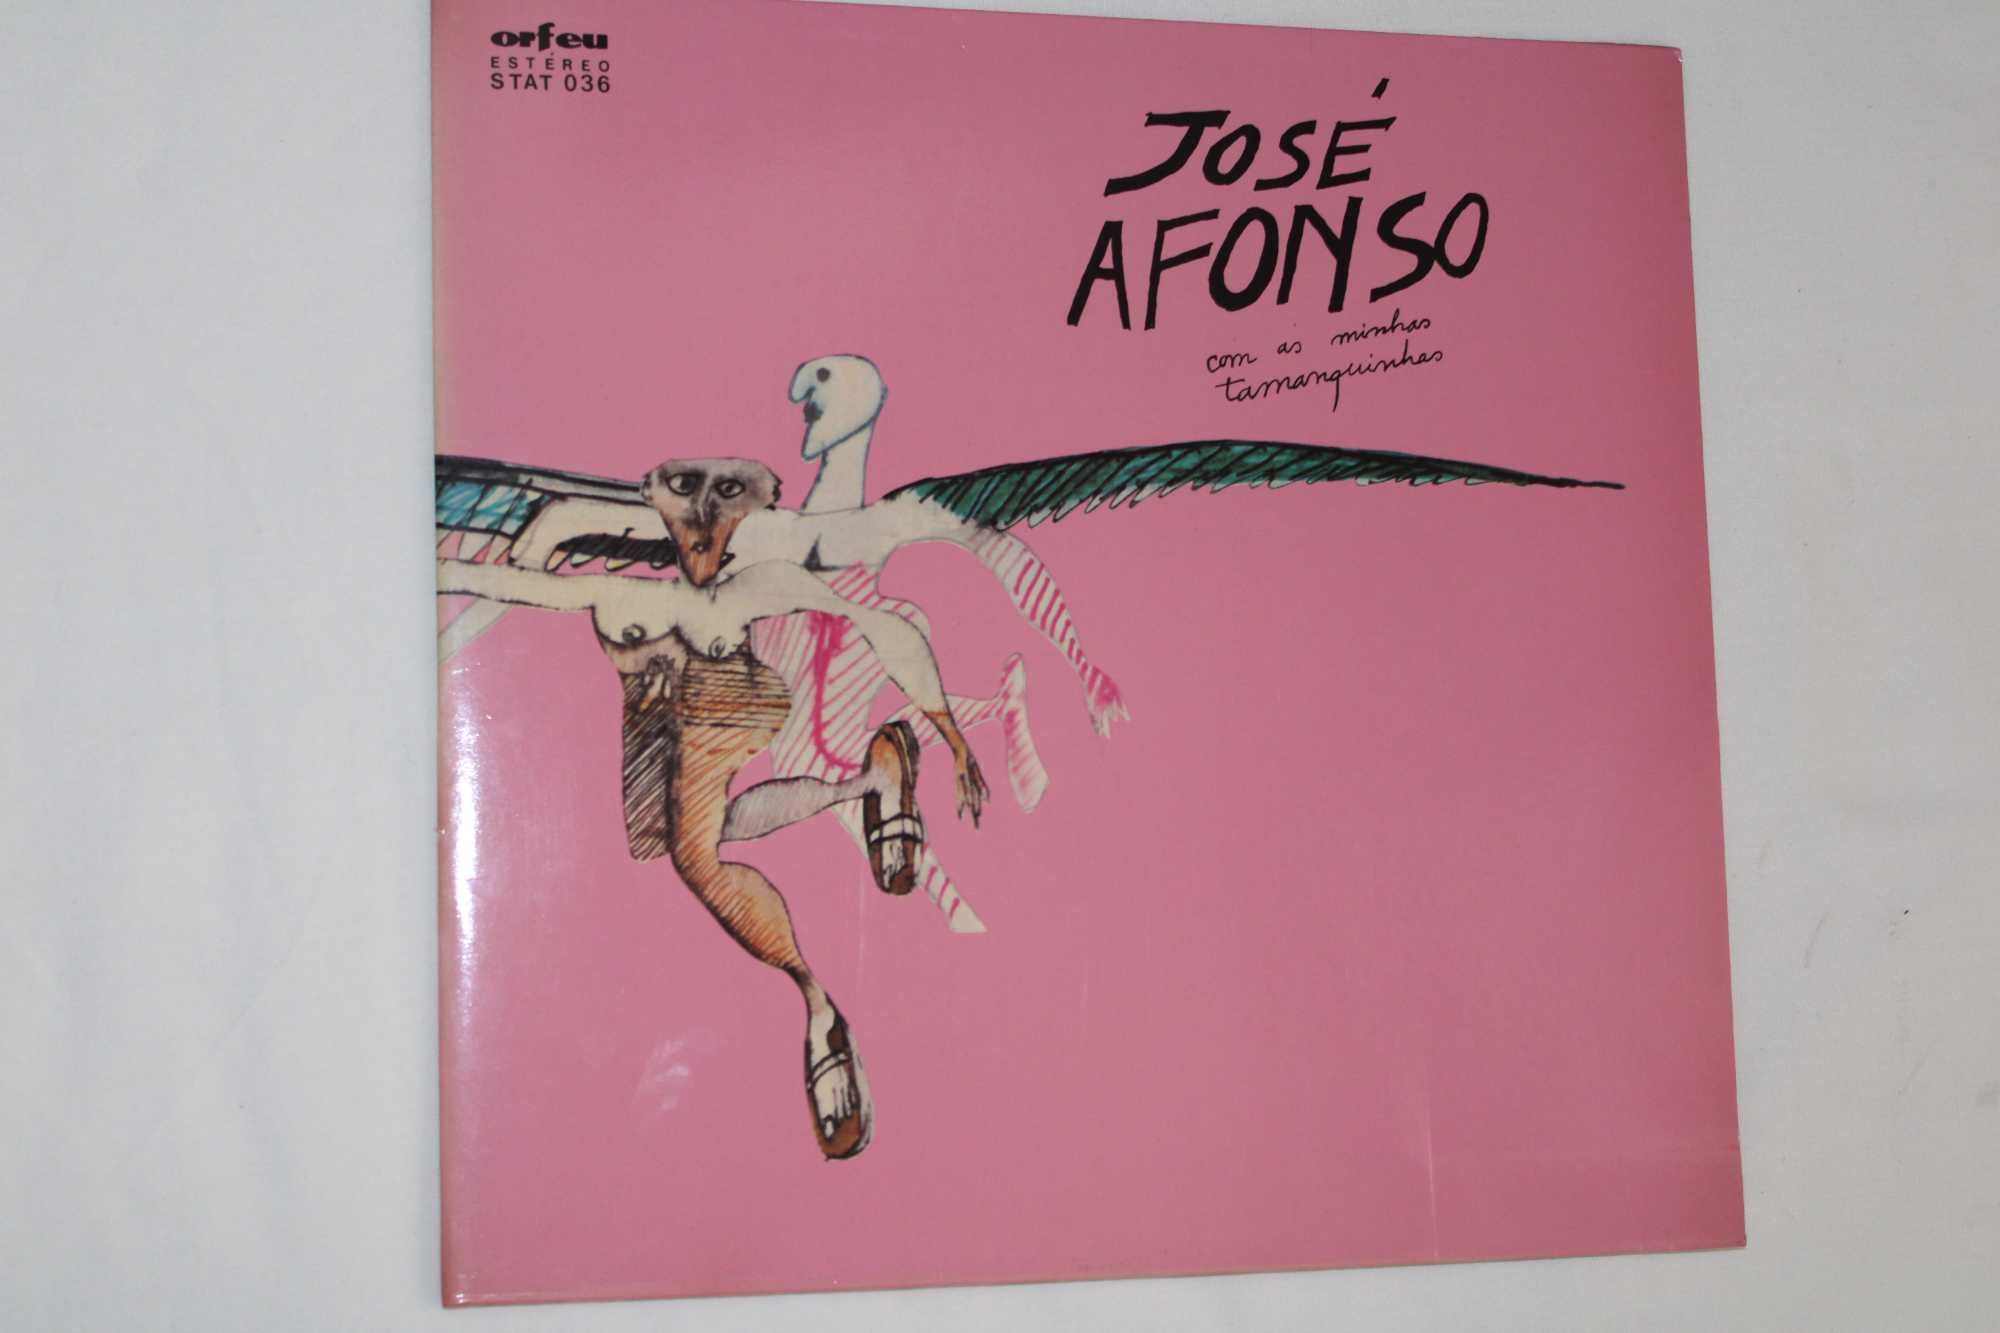 Disco José Afonso "COM AS MINHAS TAMANQUINHAS" LP em Vinil !ª edição